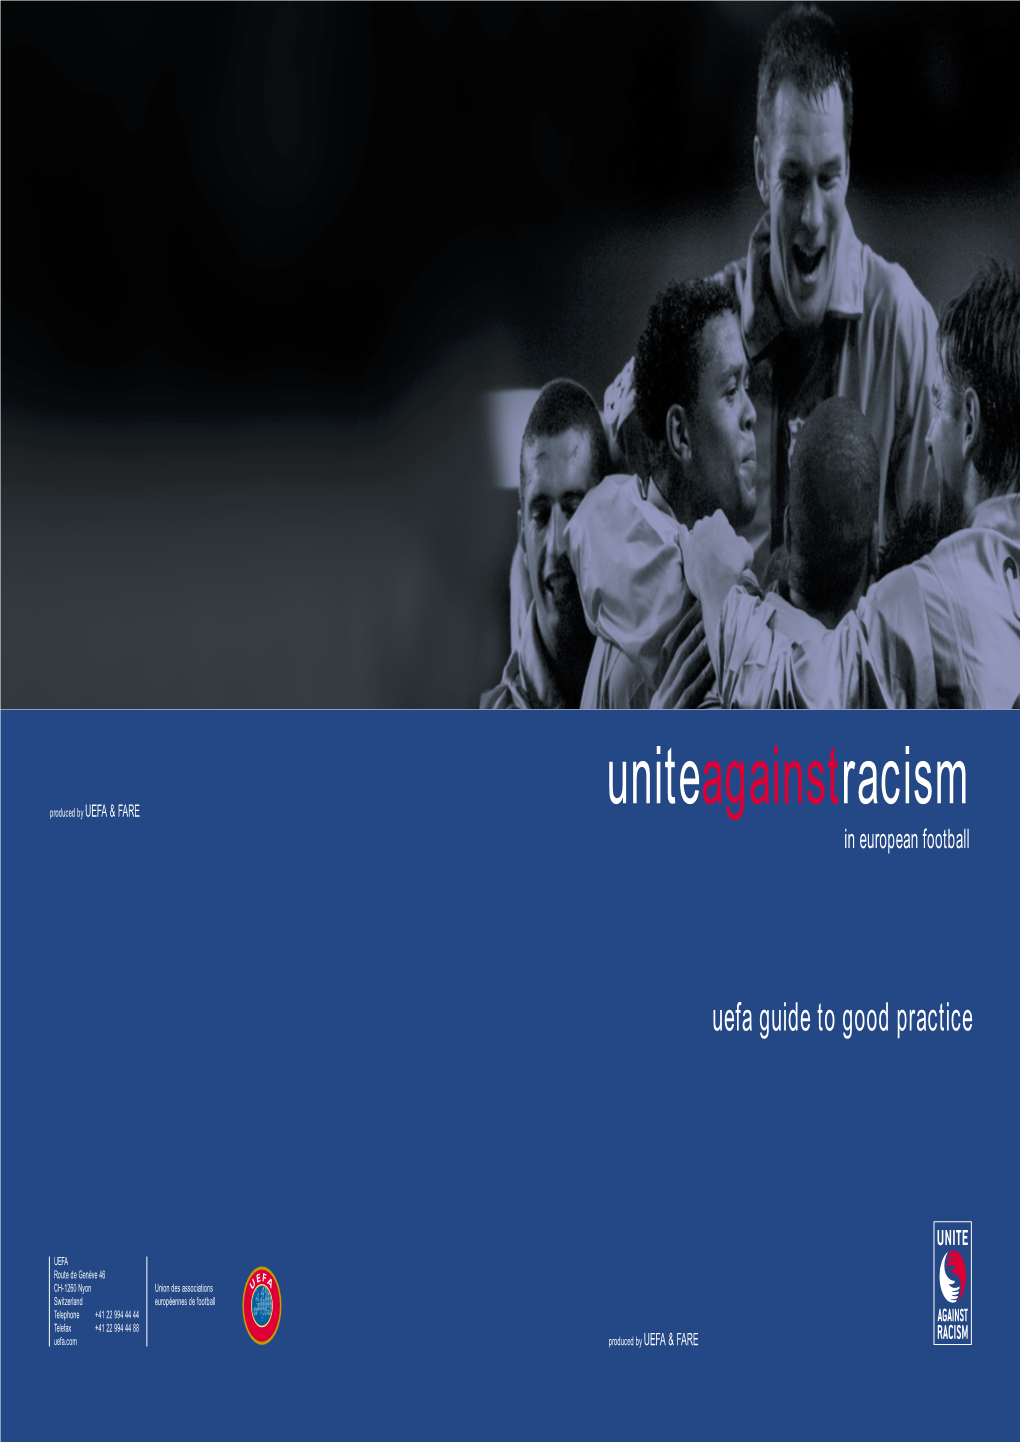 UEFA Unite Against Racism